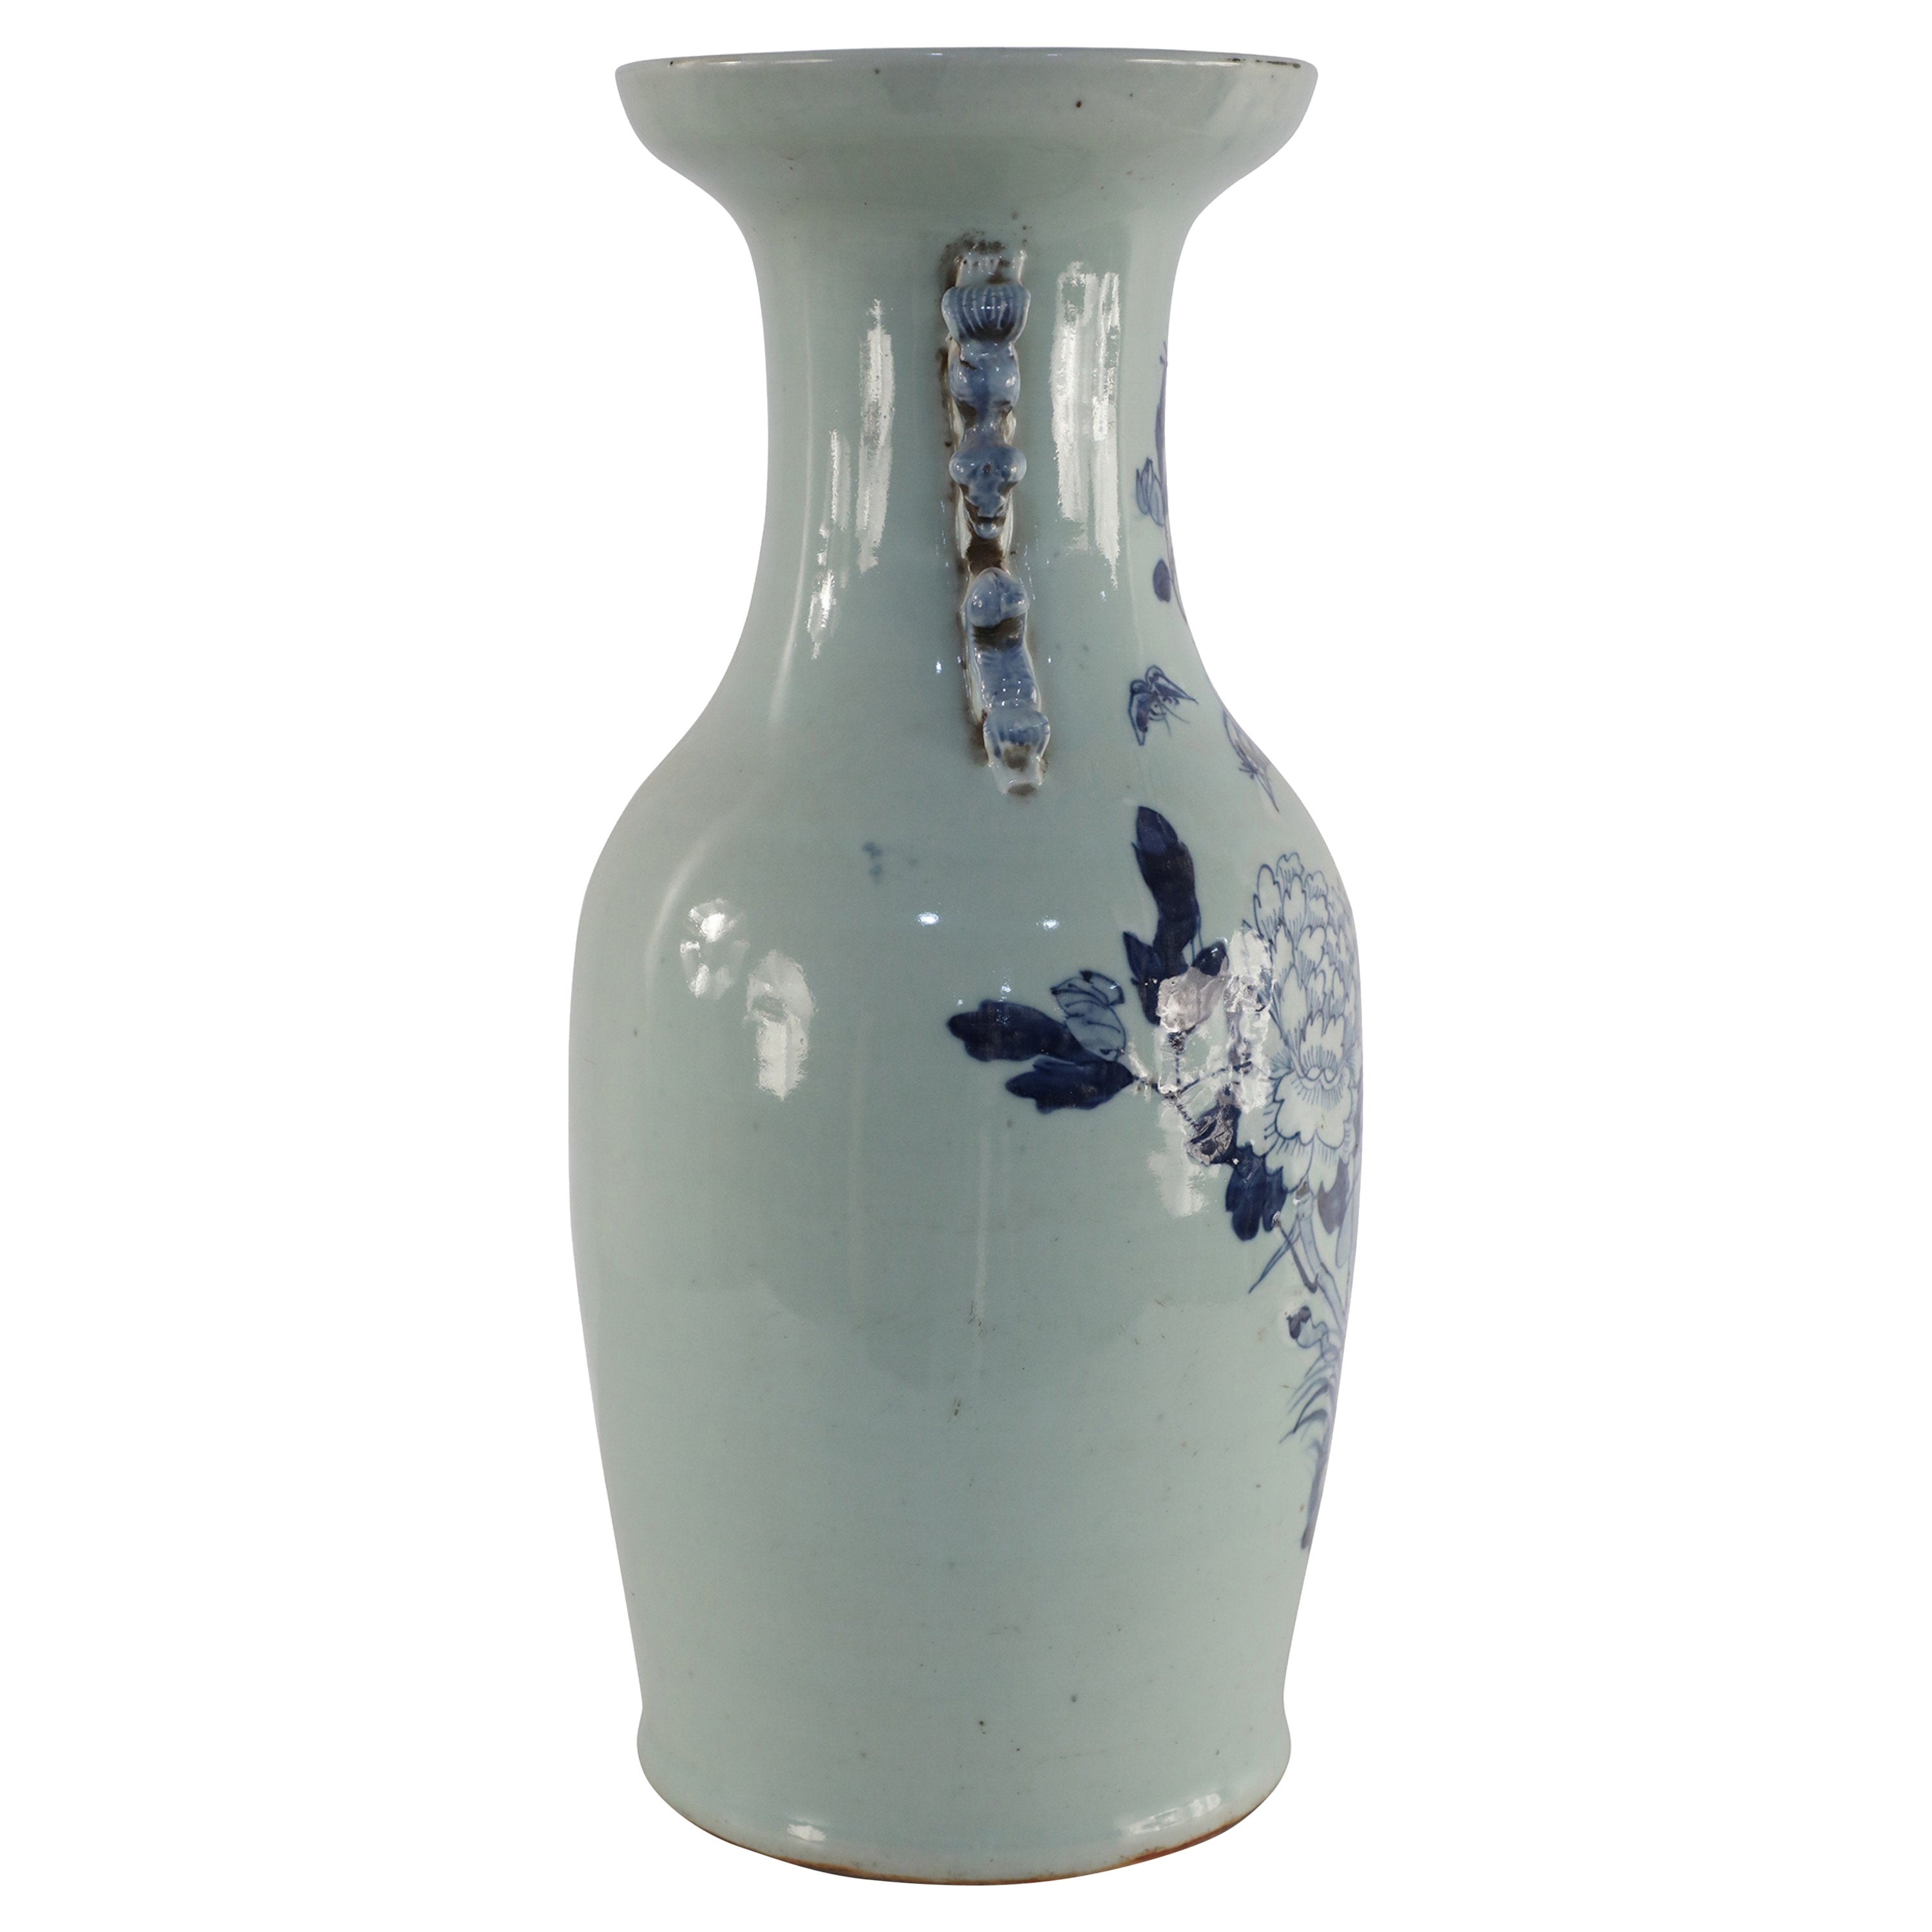 Chinesische Porzellanurne in Weiß und Blau mit natürlichem Design, Chinesisch